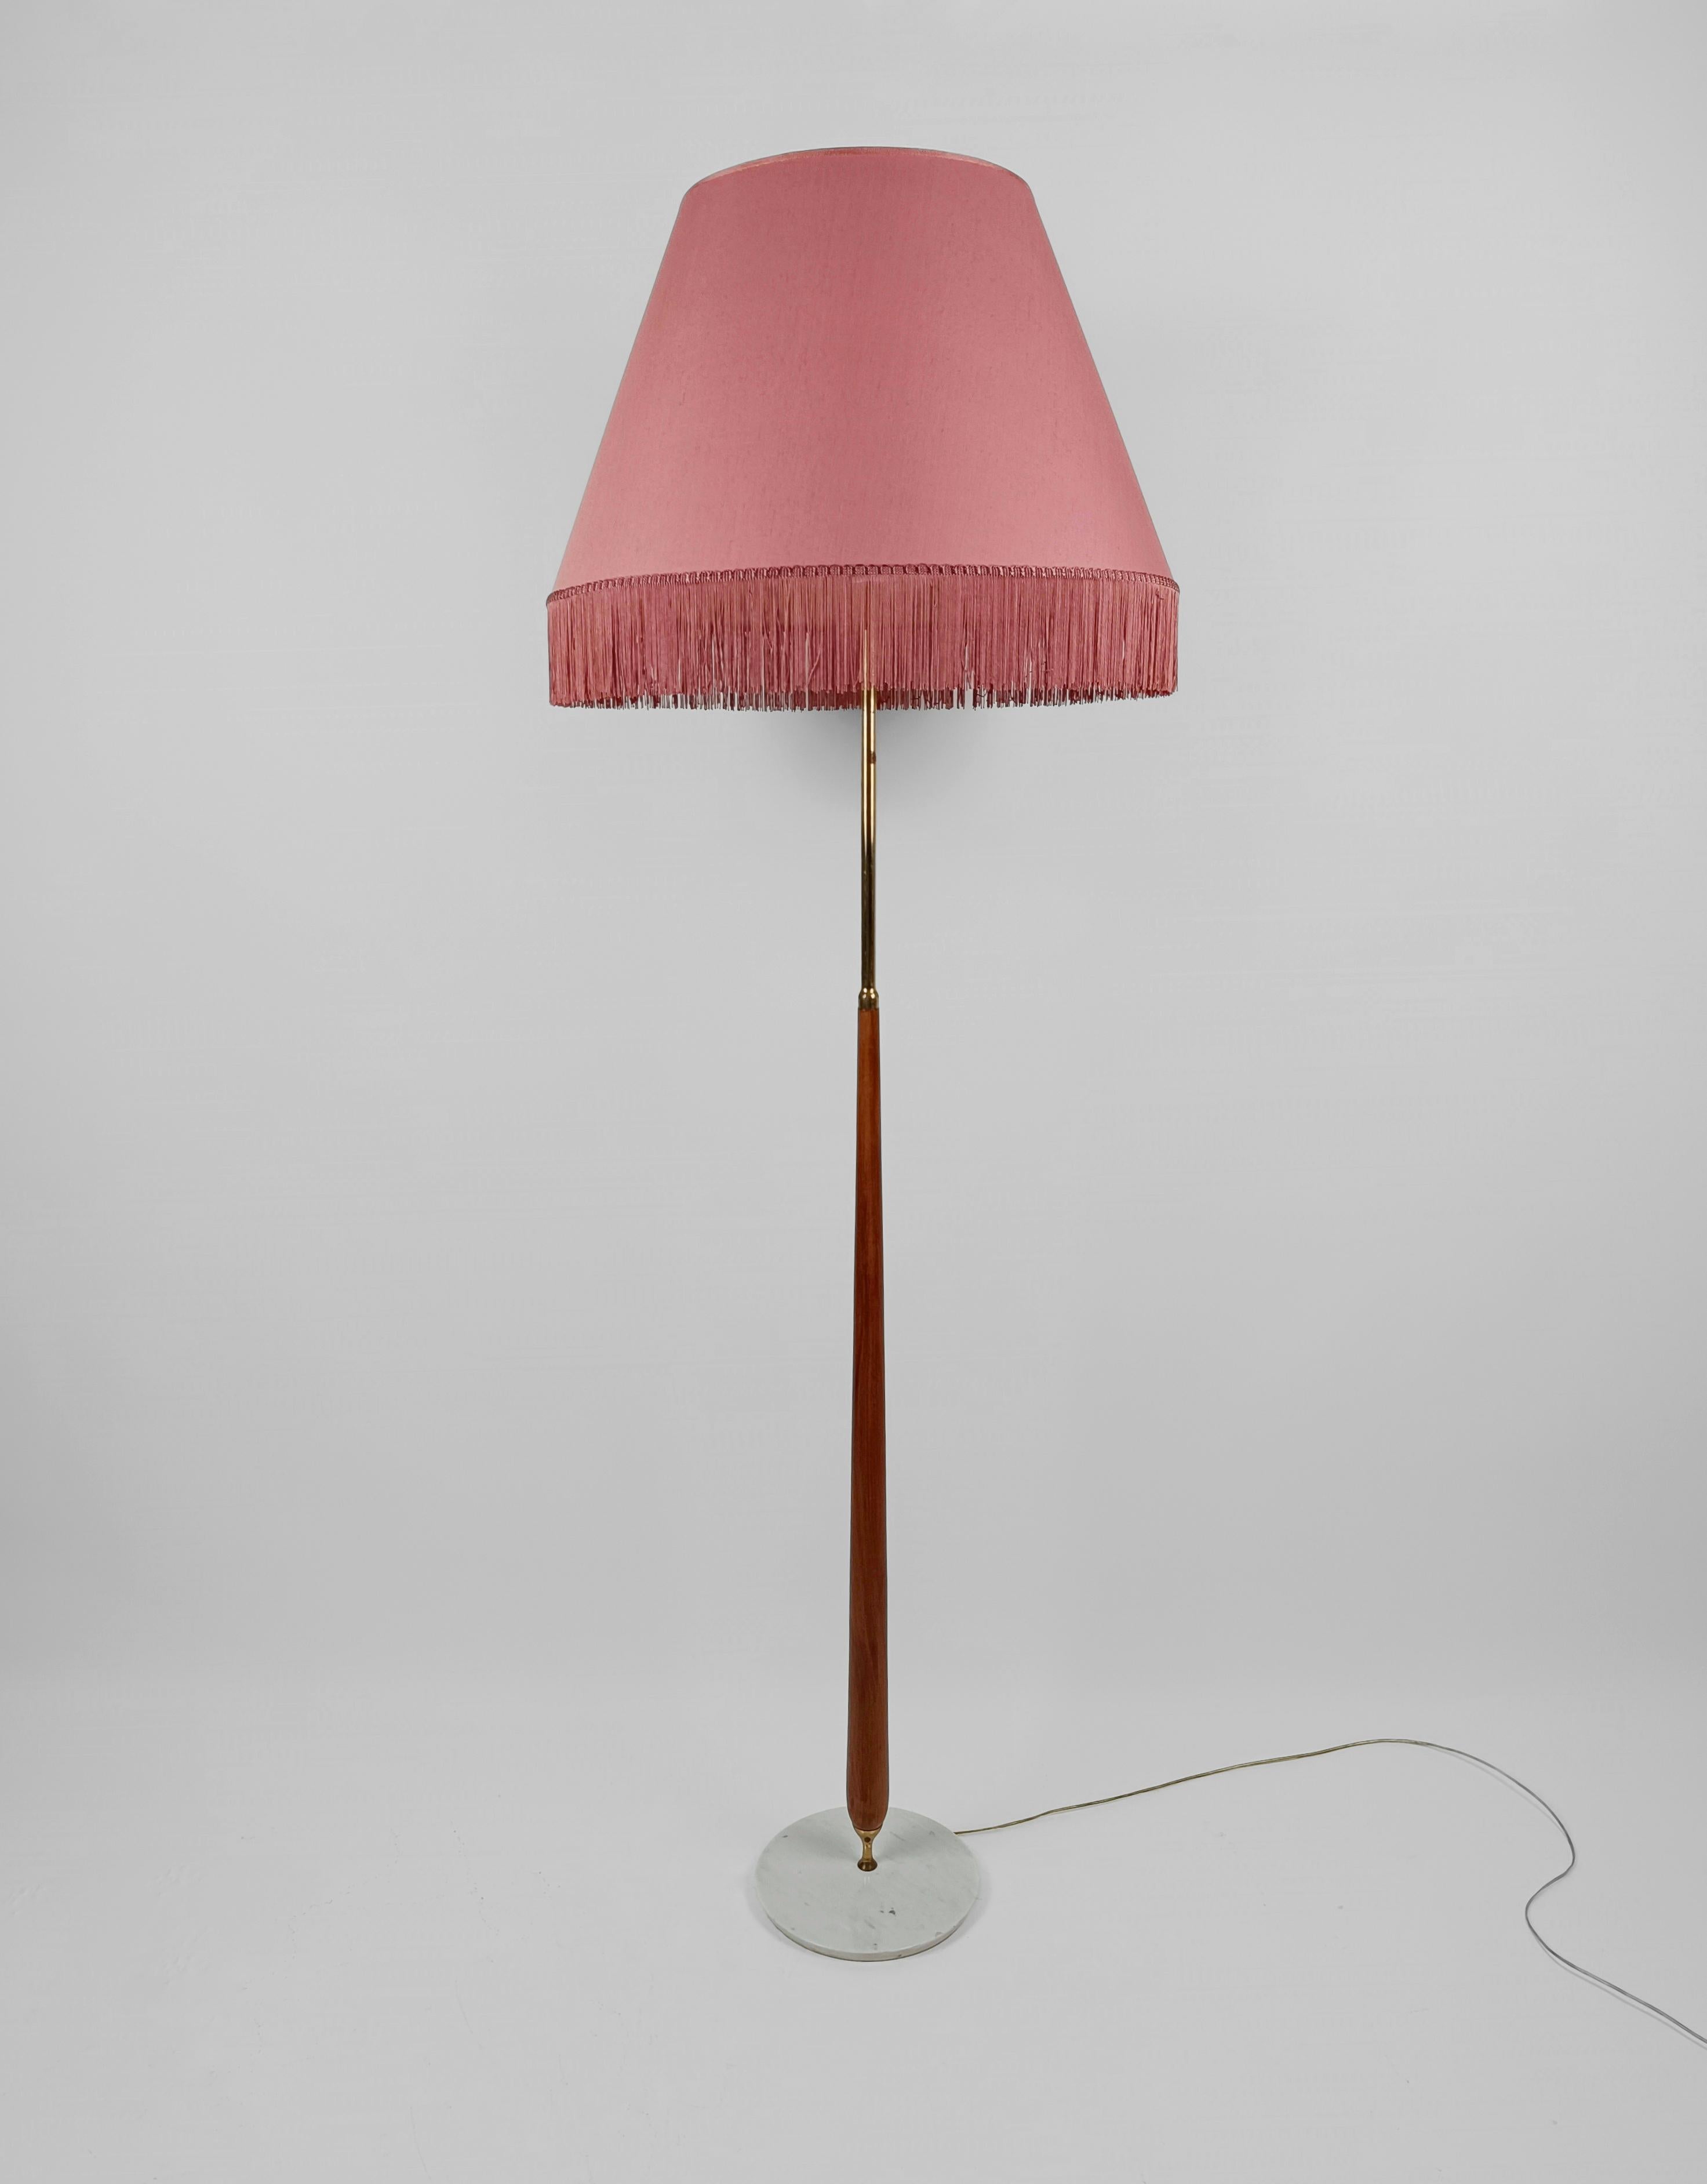 Un élégant lampadaire, fabriqué en Italie dans les années 1950 ; réalisé avec des matériaux précieux tels que le marbre de Carrare, le bois massif et le laiton.
Le design de ce lampadaire Mid Century Modern est essentiel, tout est basé sur la